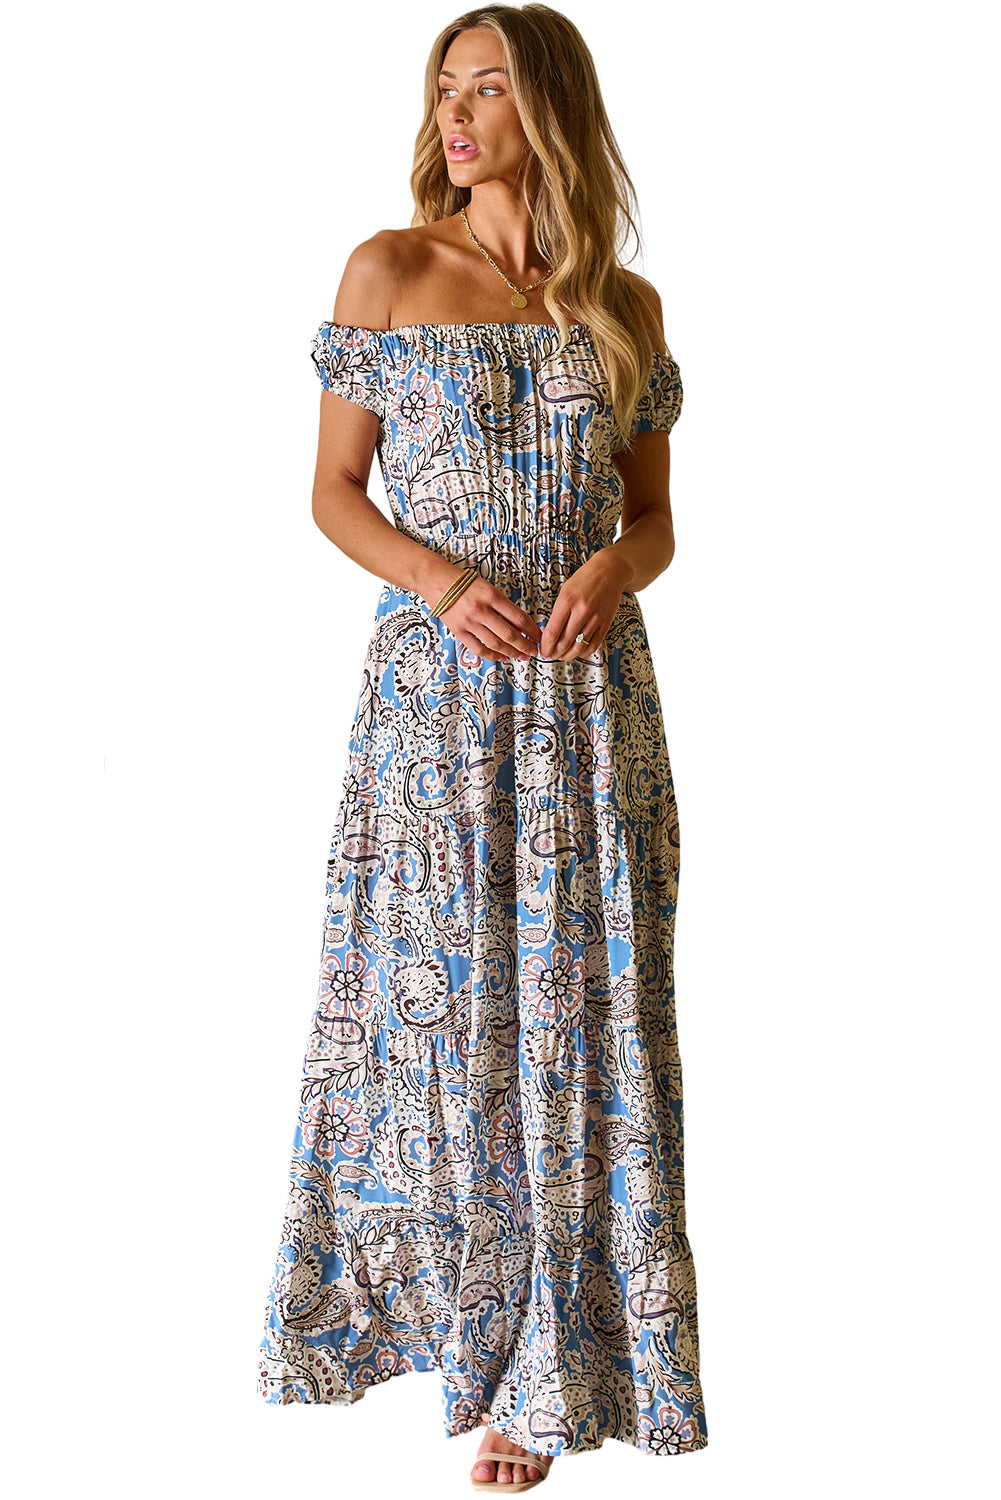 Plava maksi haljina s otvorenim ramenima s printom boho paisley